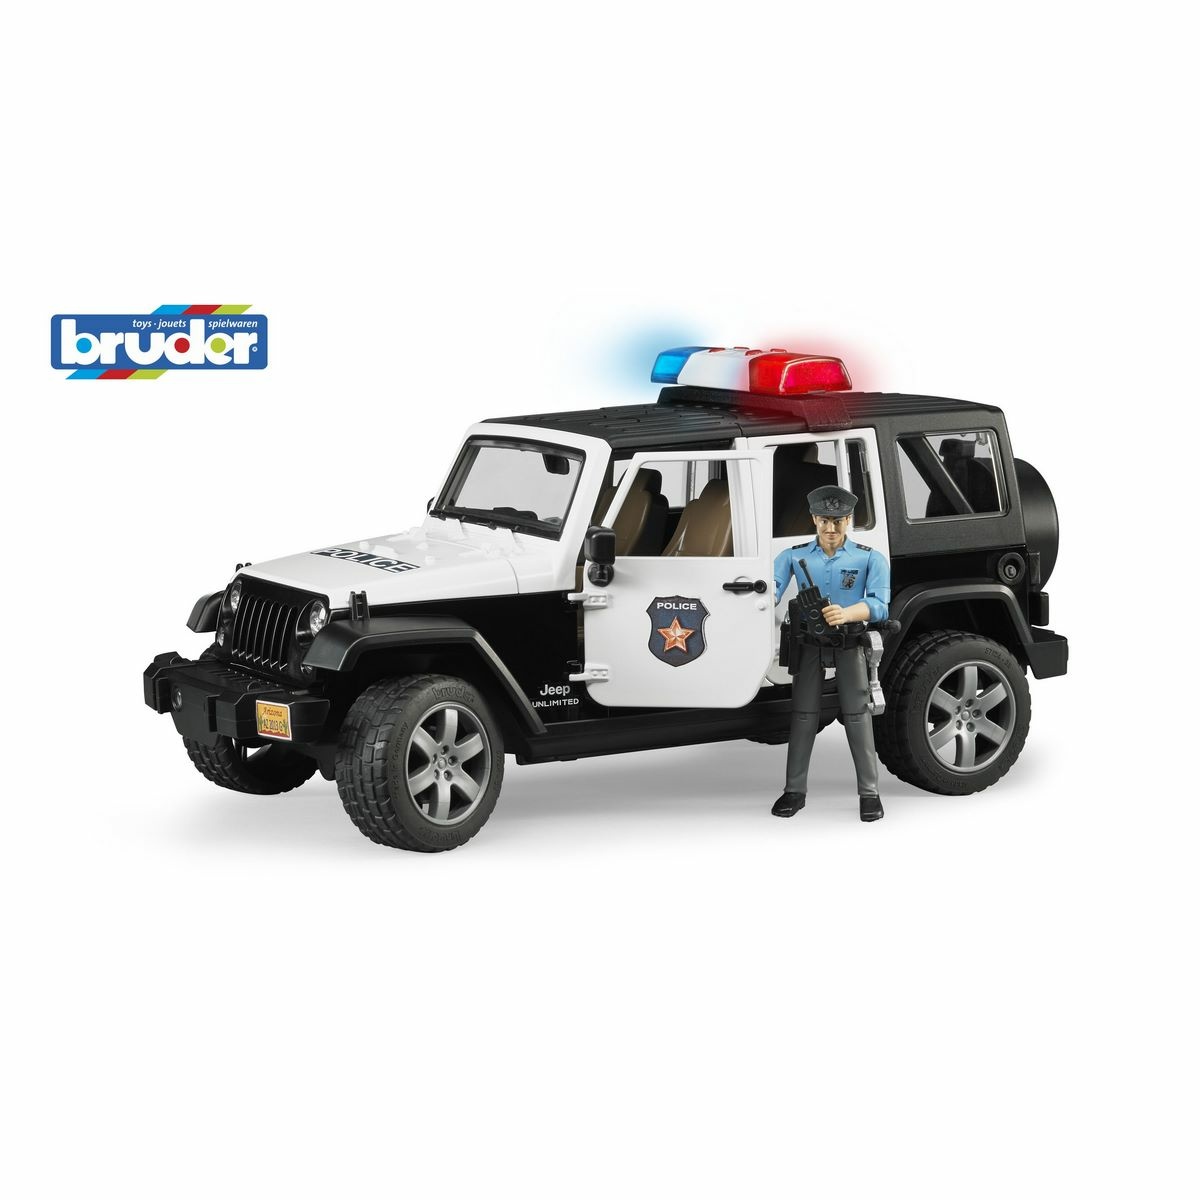 Bruder 02526 policejní Jeep Wrangler s policistou a příslušenstvím